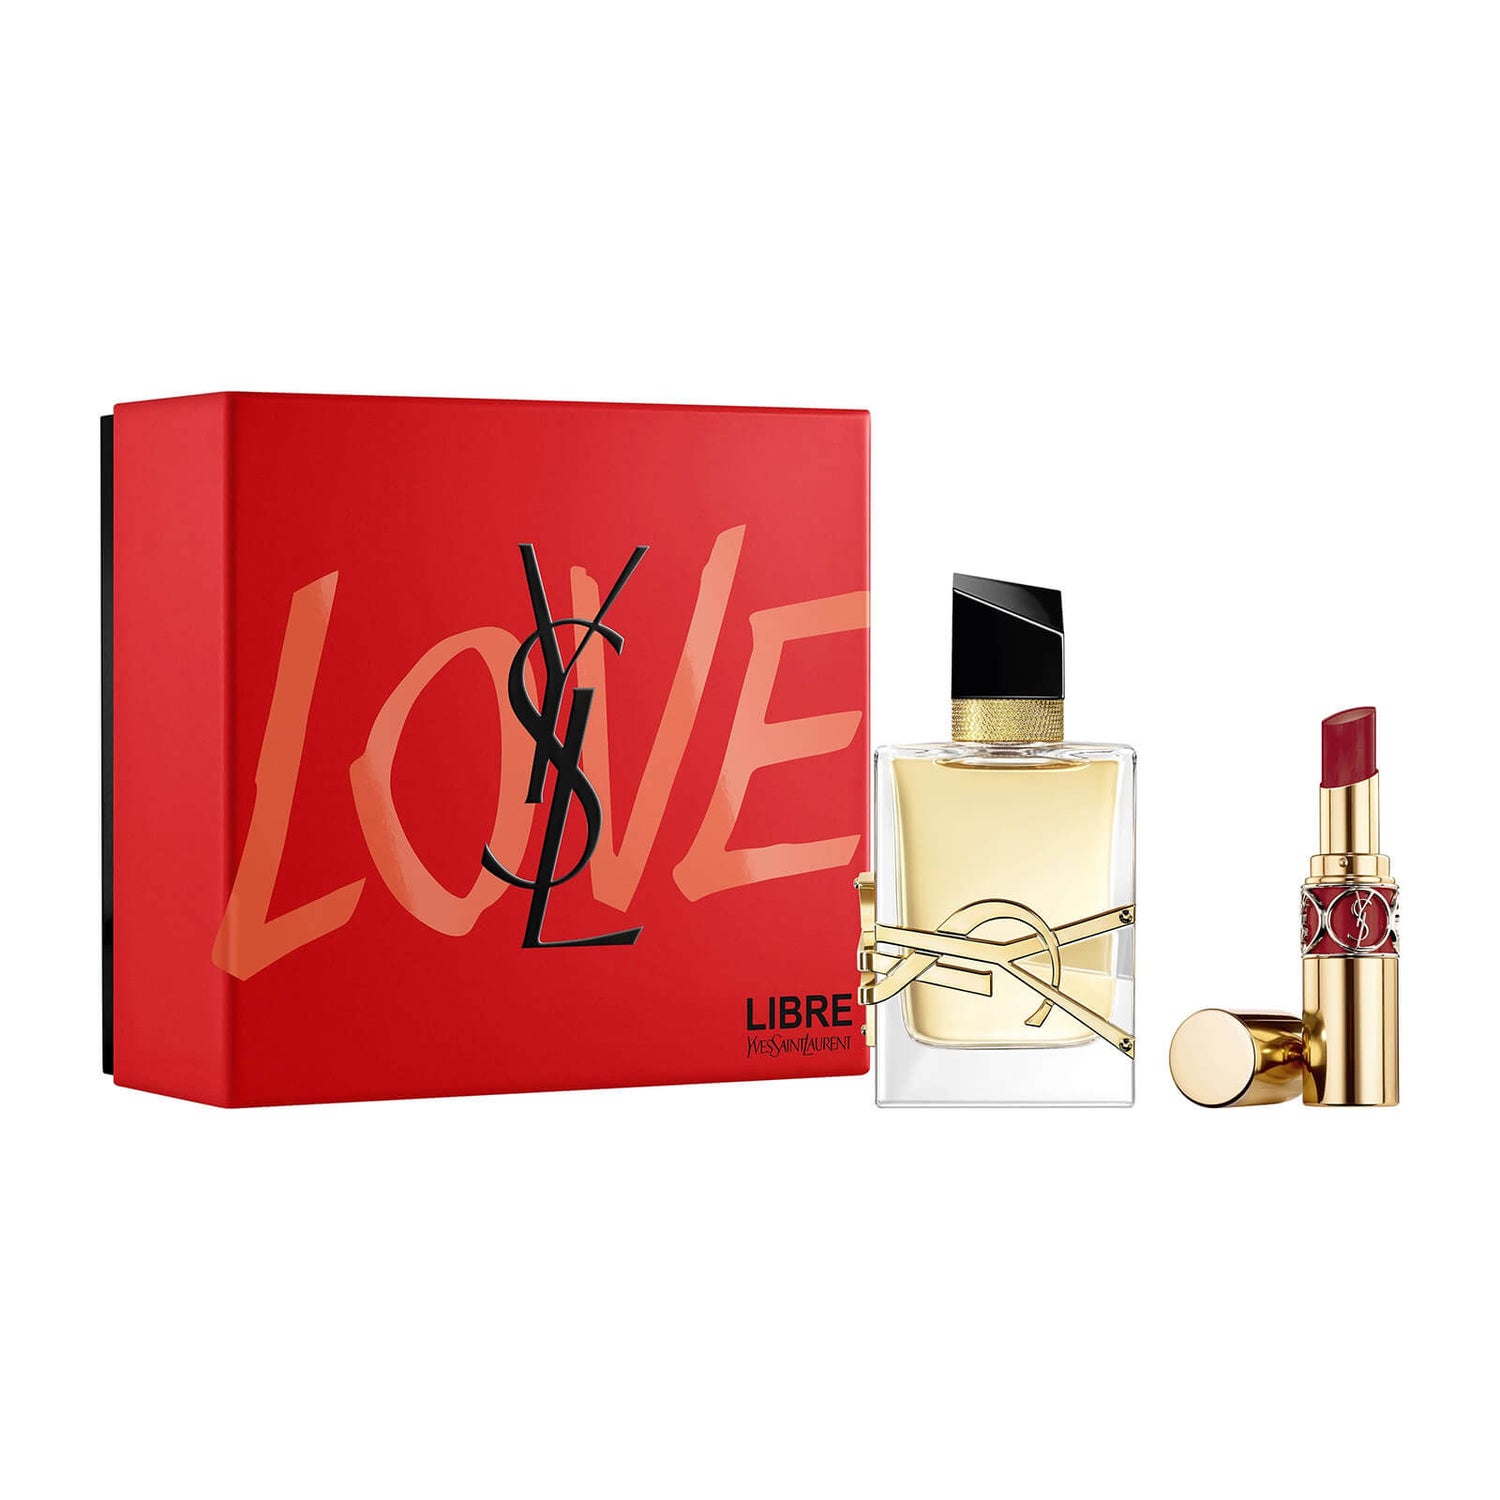 Yves Saint Laurent Libre Eau de Parfum Gift Set (Worth £90.00)